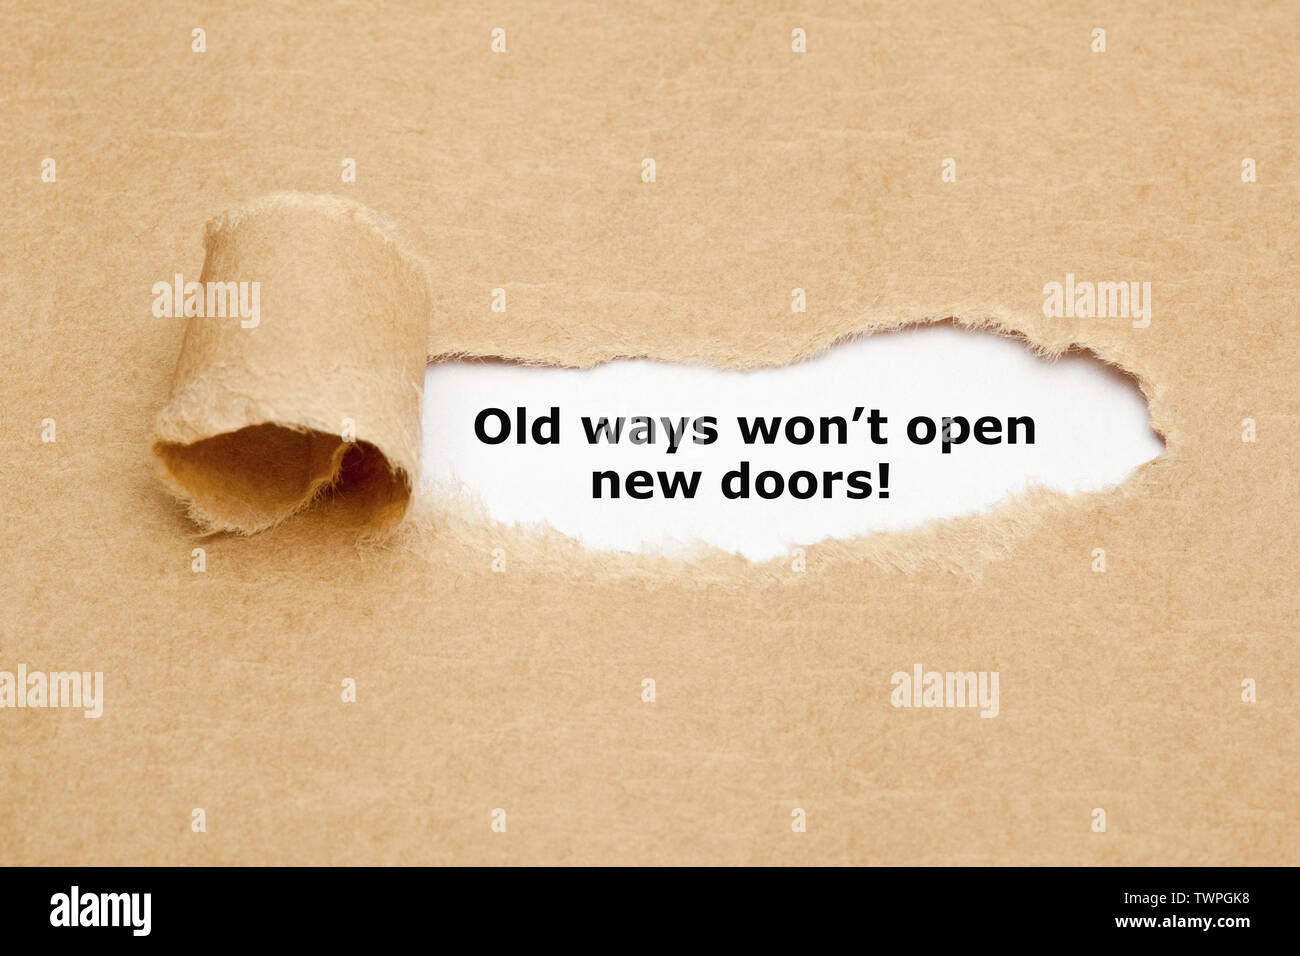 Cita inspiradora viejas formas no se abrirán nuevas puertas vintage escrito en máquina de escribir. Foto de stock